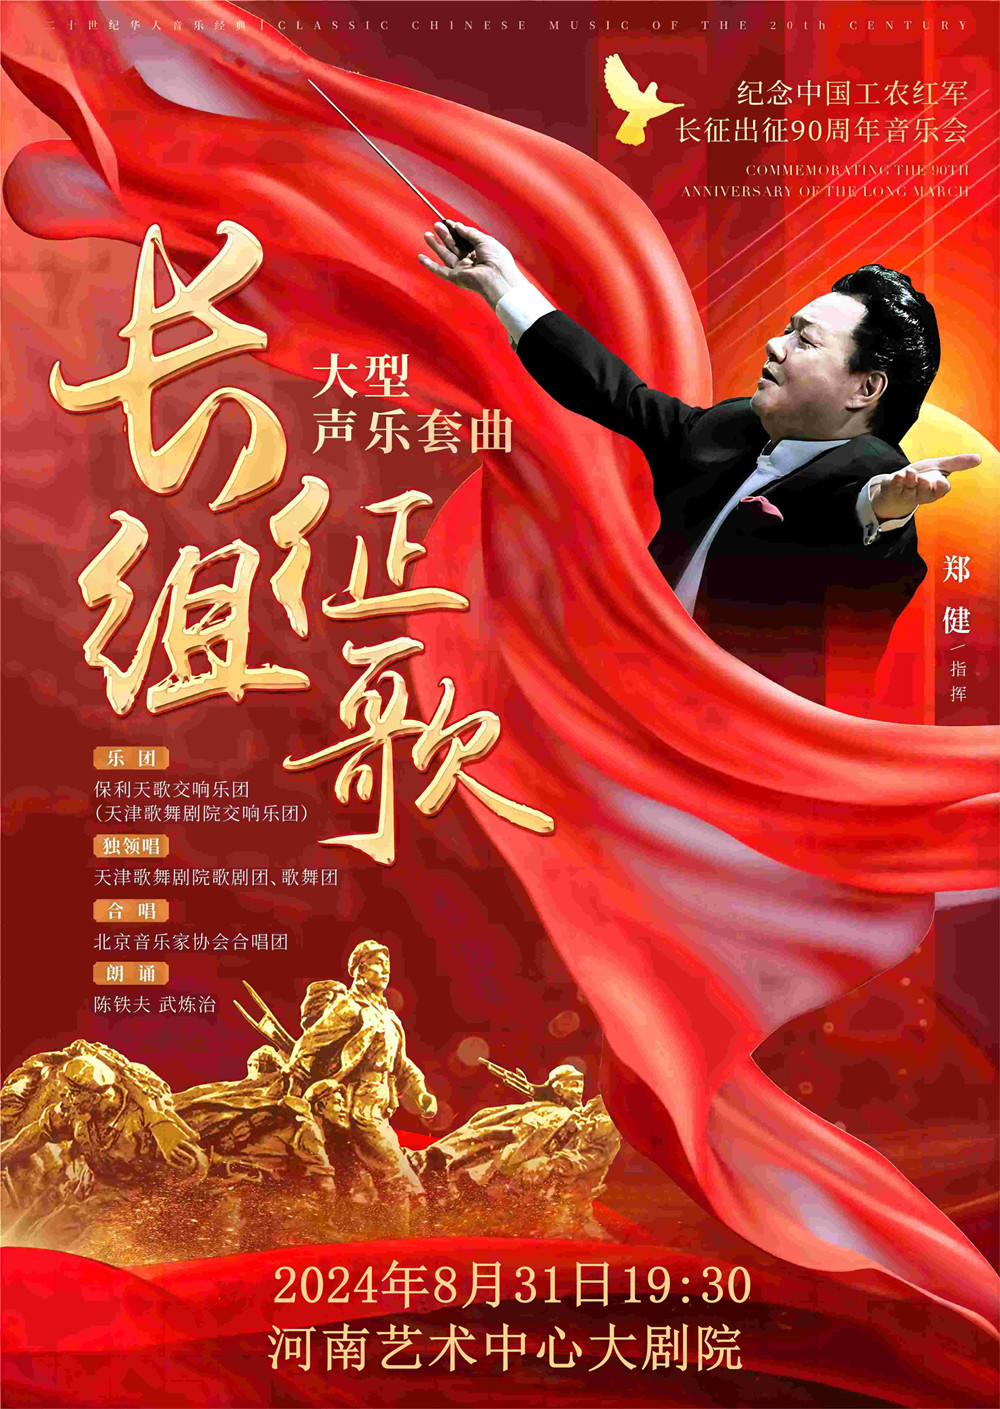 【郑州】二十世纪华人音乐经典《长征组歌》大型声乐套曲——纪念中国工农红军长征出征90周年音乐会